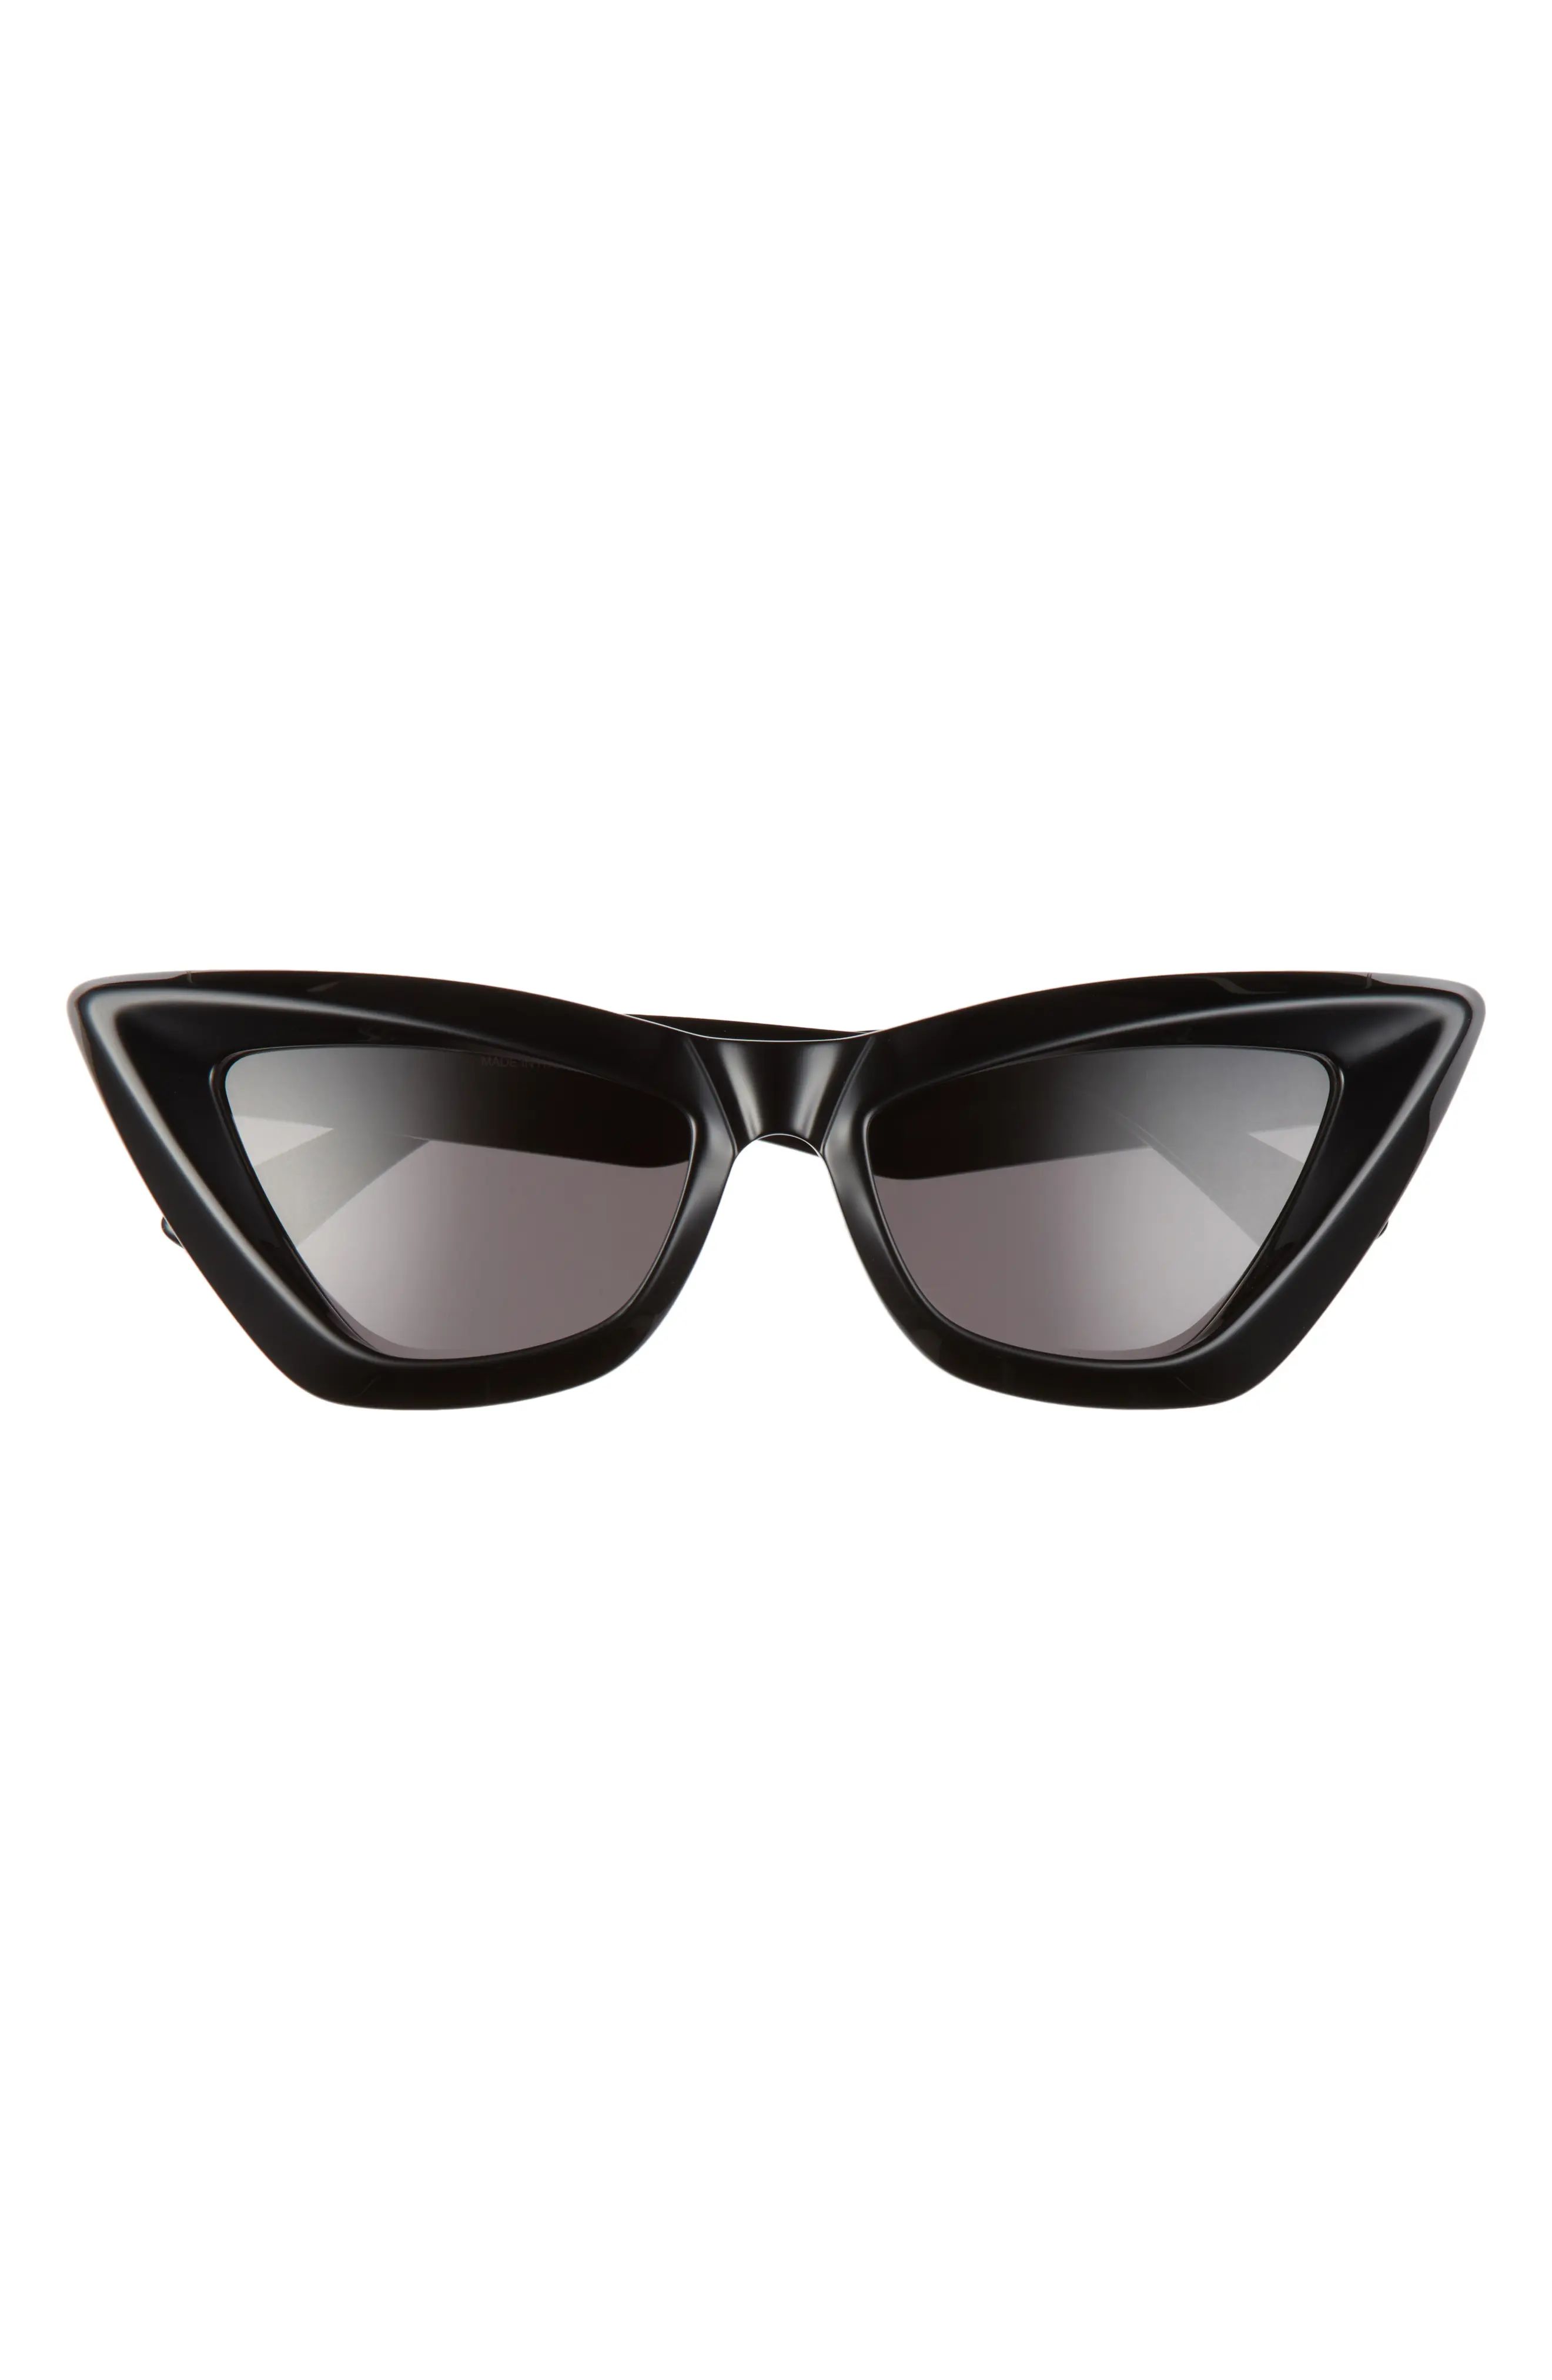 Women's Bottega Veneta 53mm Cat Eye Sunglasses - Black/ Grey | Nordstrom